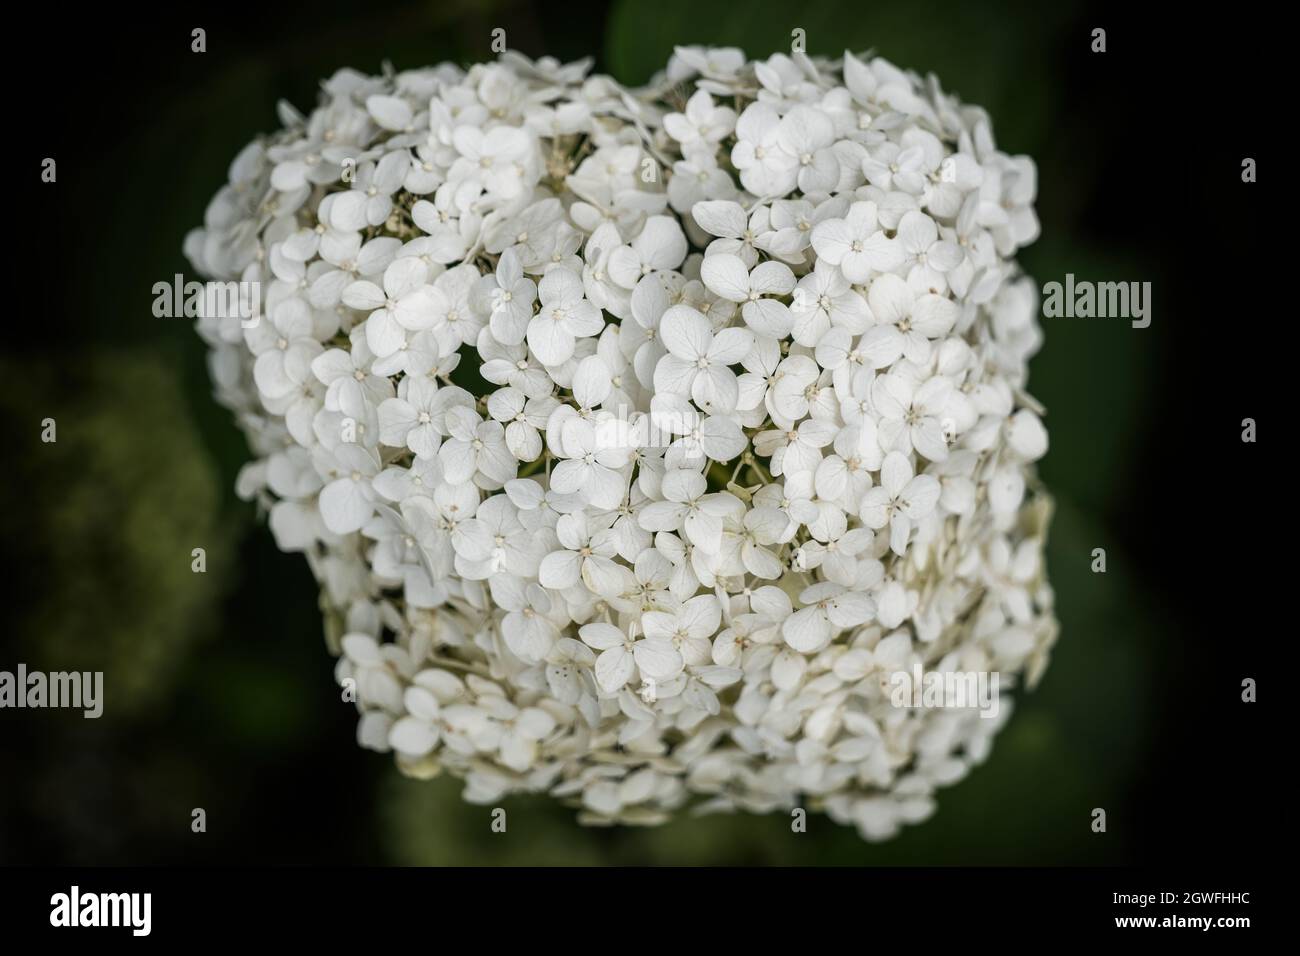 Hydrangea arborescens fiori bianchi, nomi comuni: Hydrangea liscia, hydrangea selvaggia, sexbark, arbusto deciduo nella famiglia: Hydrangeaceae, native r Foto Stock